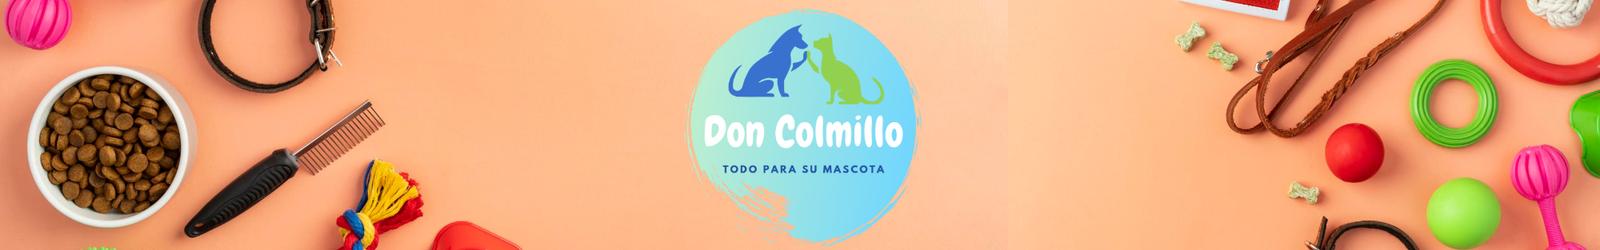 Don colmillo Pet Shop - Alimento balanceado a domicilio (2)